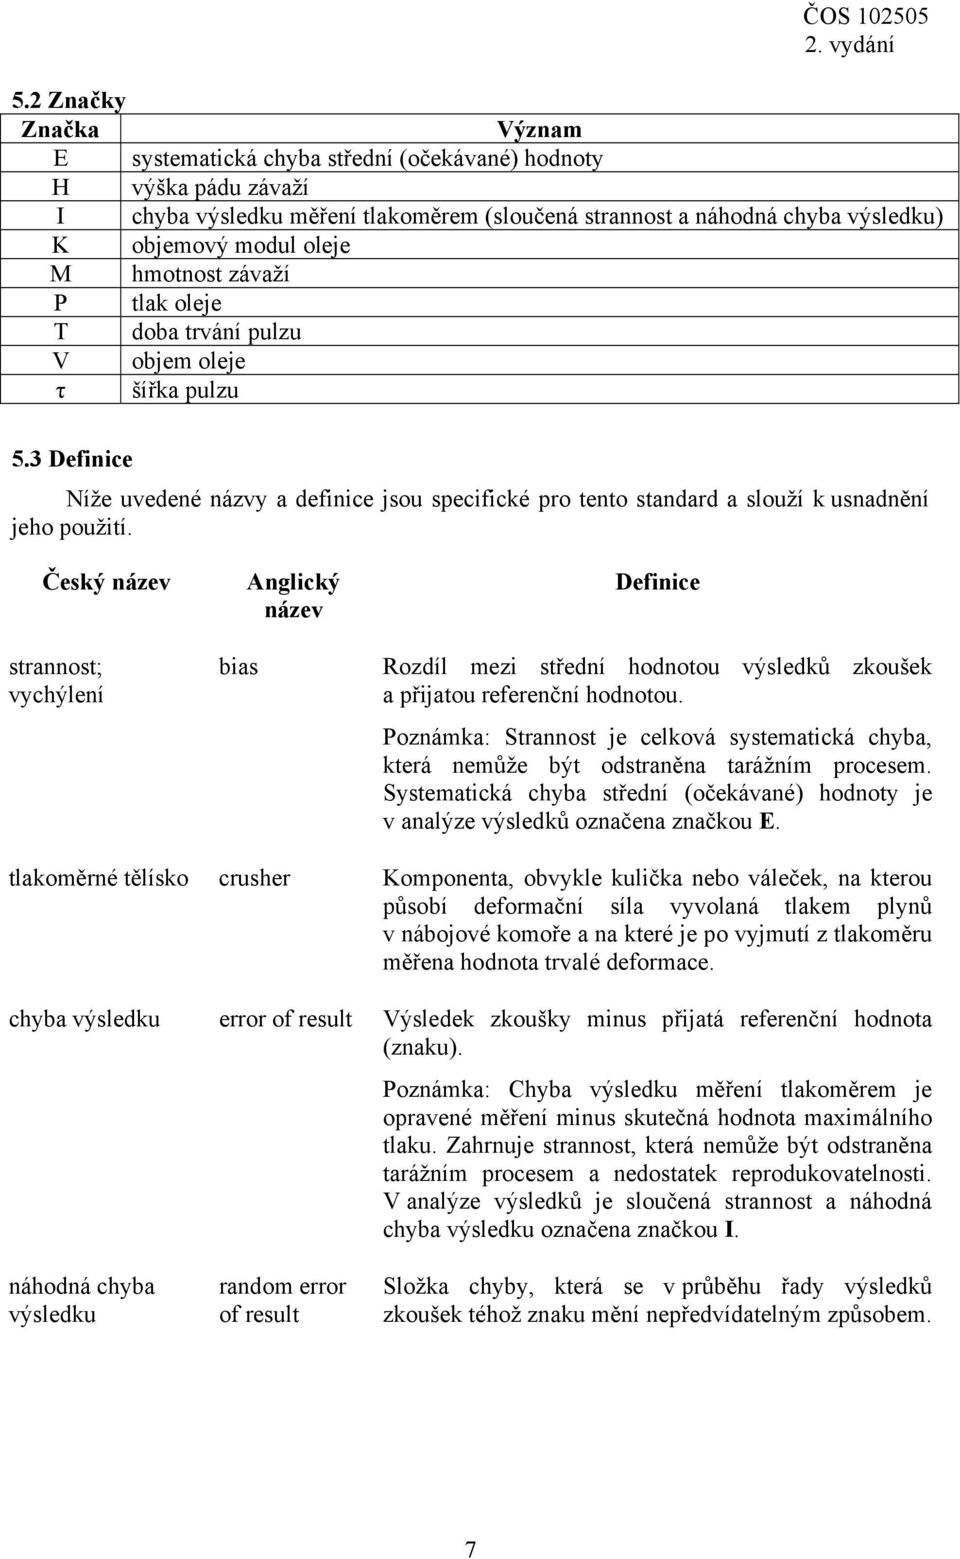 Český název strannost; vychýlení bias Anglický název Definice Rozdíl mezi střední hodnotou výsledků zkoušek a přijatou referenční hodnotou.